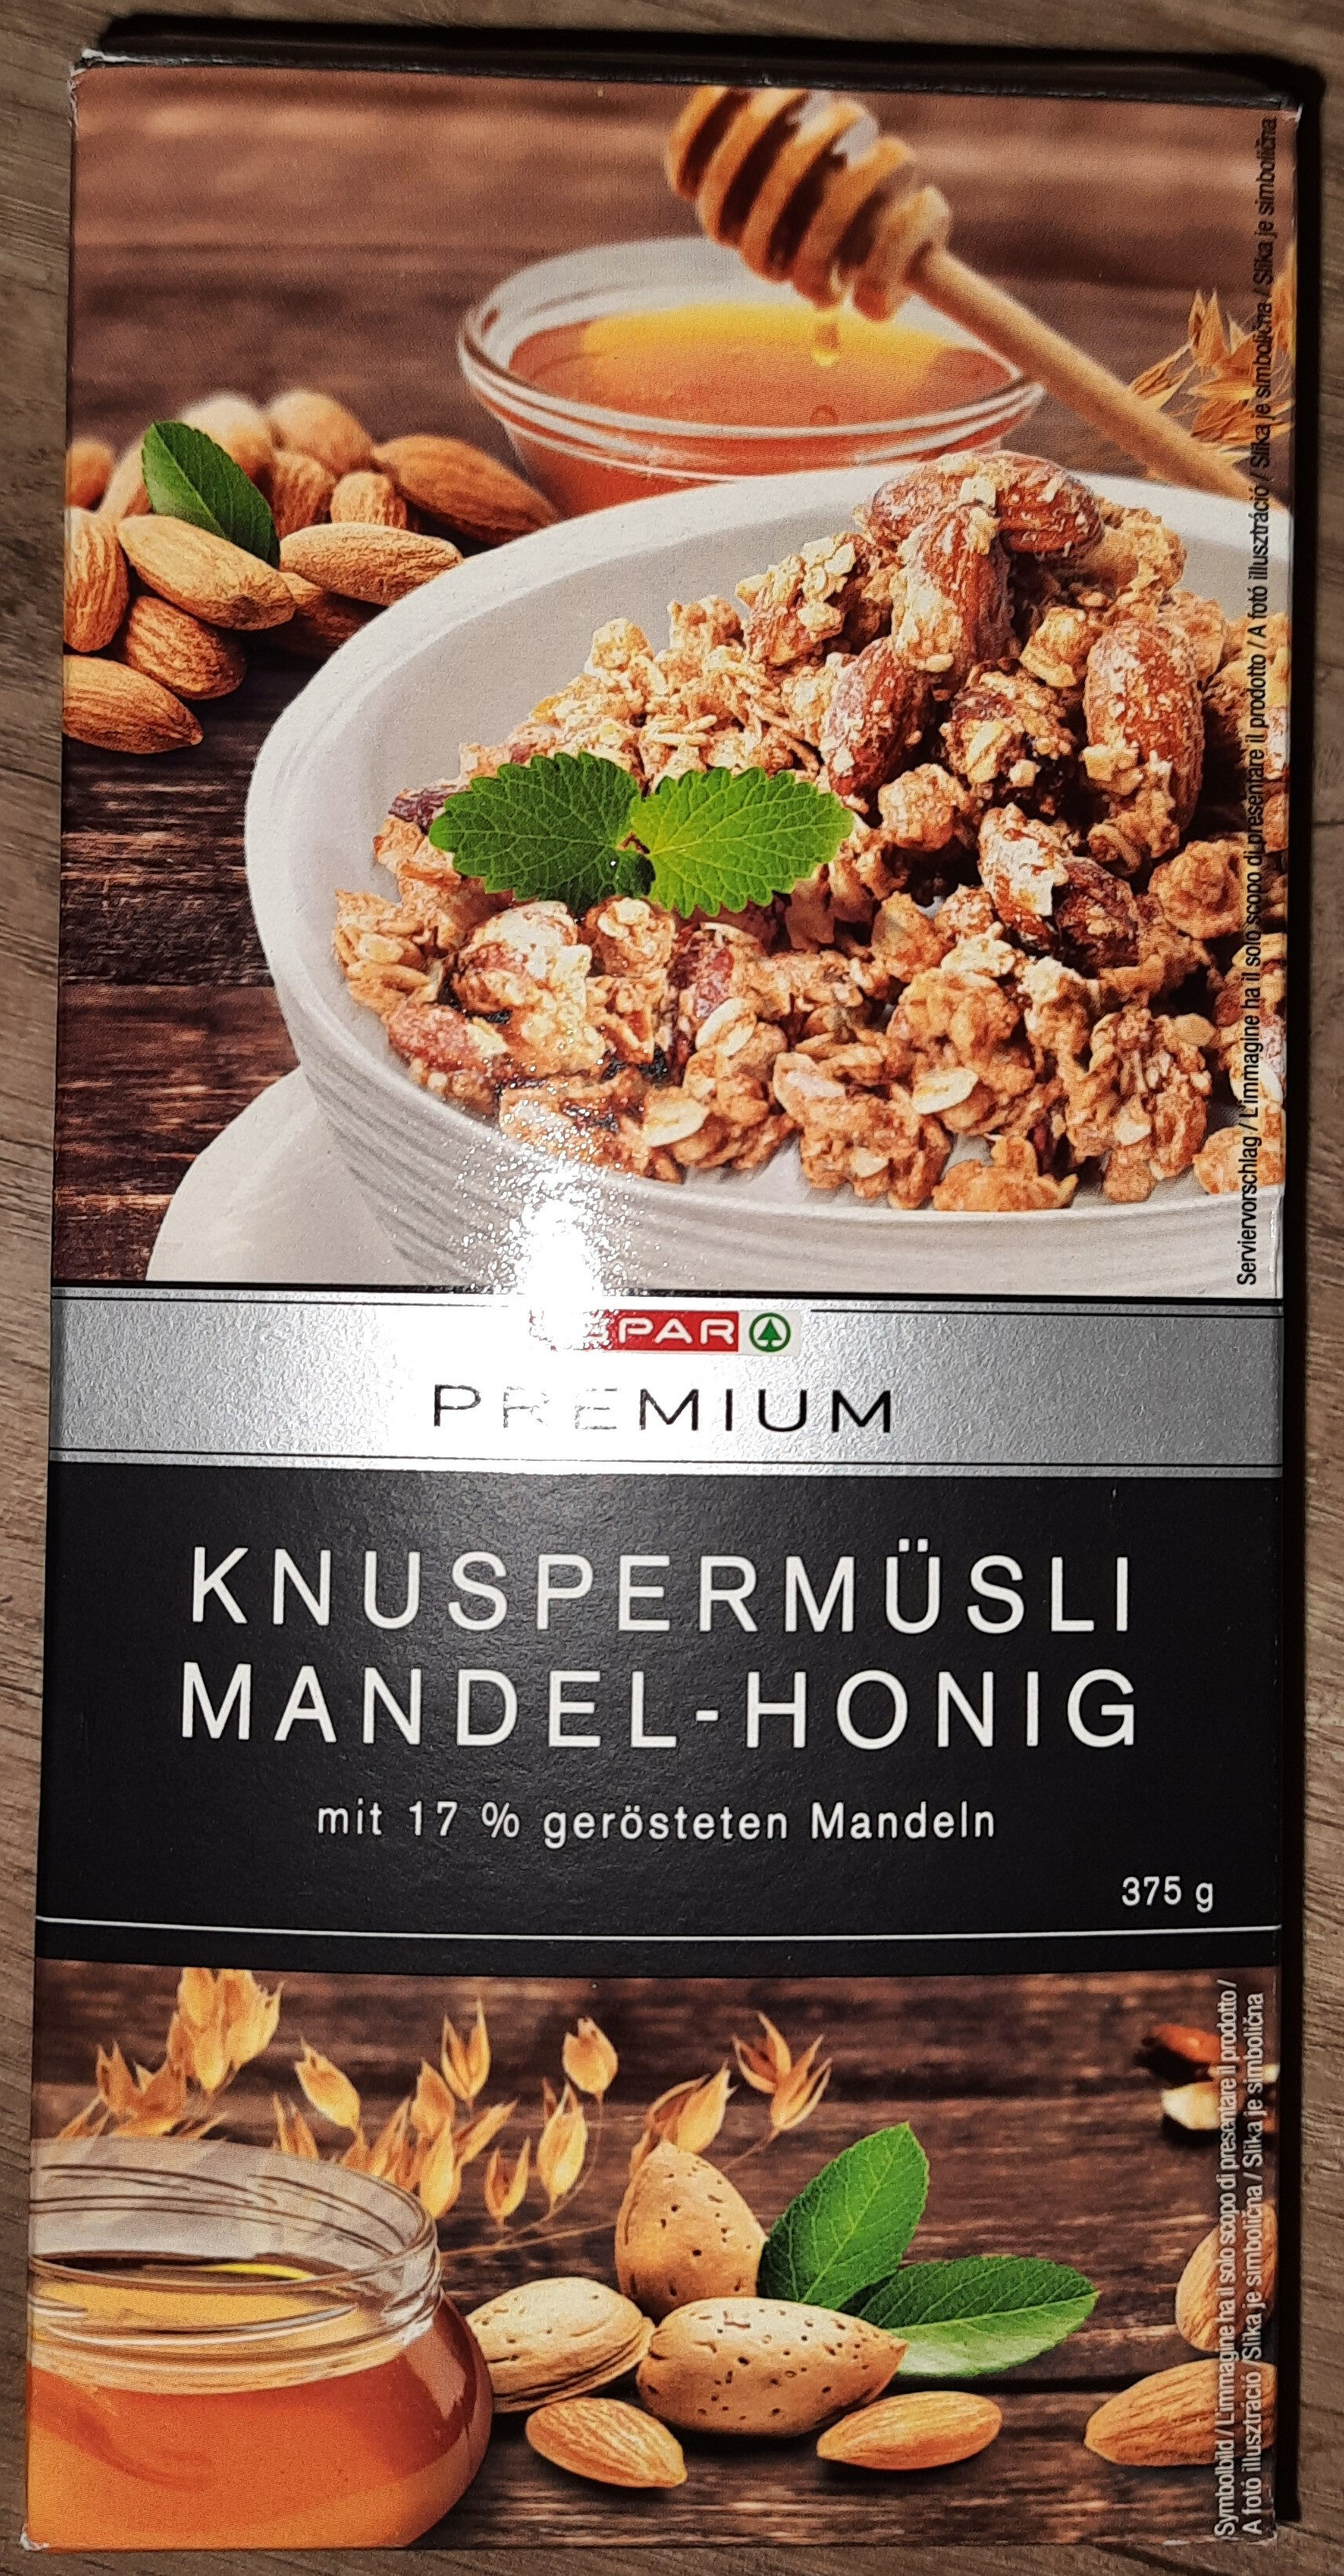 Knuspermüsli Mandel-Honig - Produkt